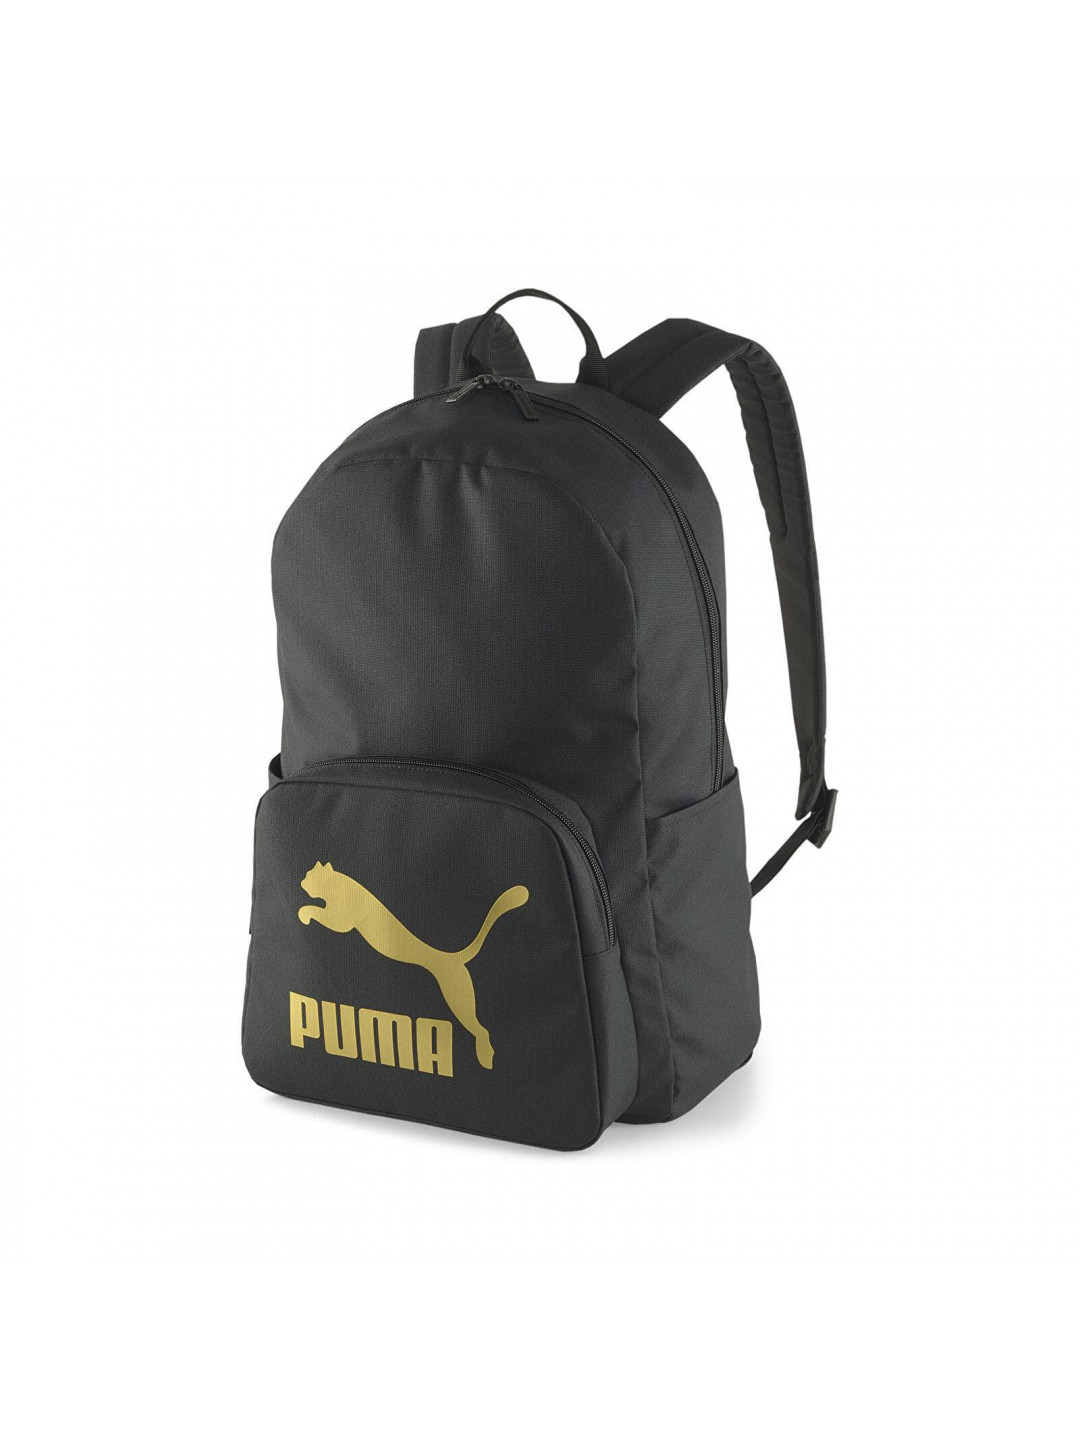 Puma Originals Urban Backpack Puma Black